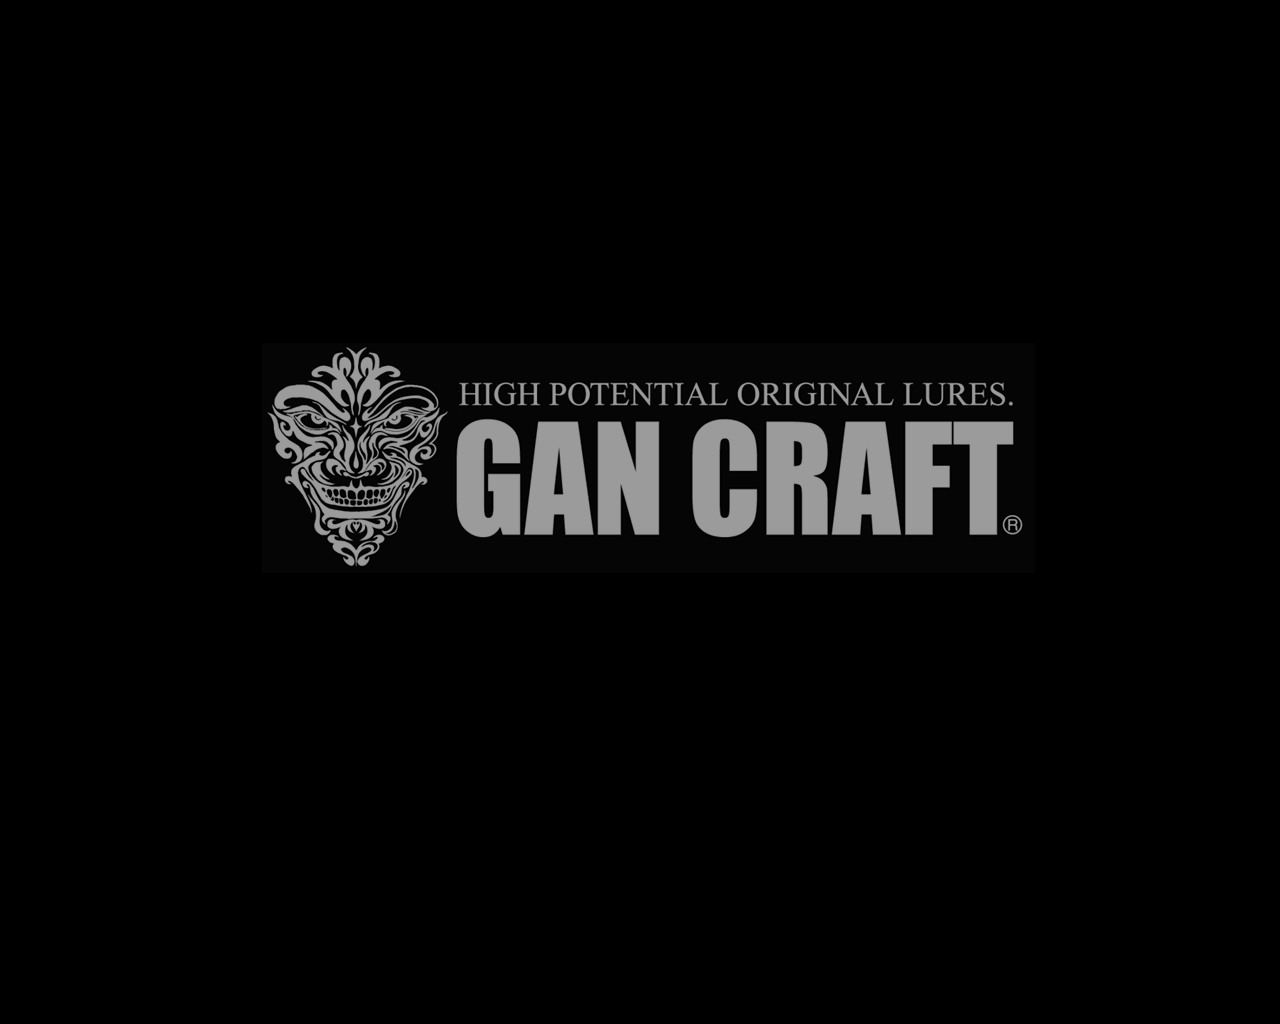 Gan Craft High Potential Original Lures